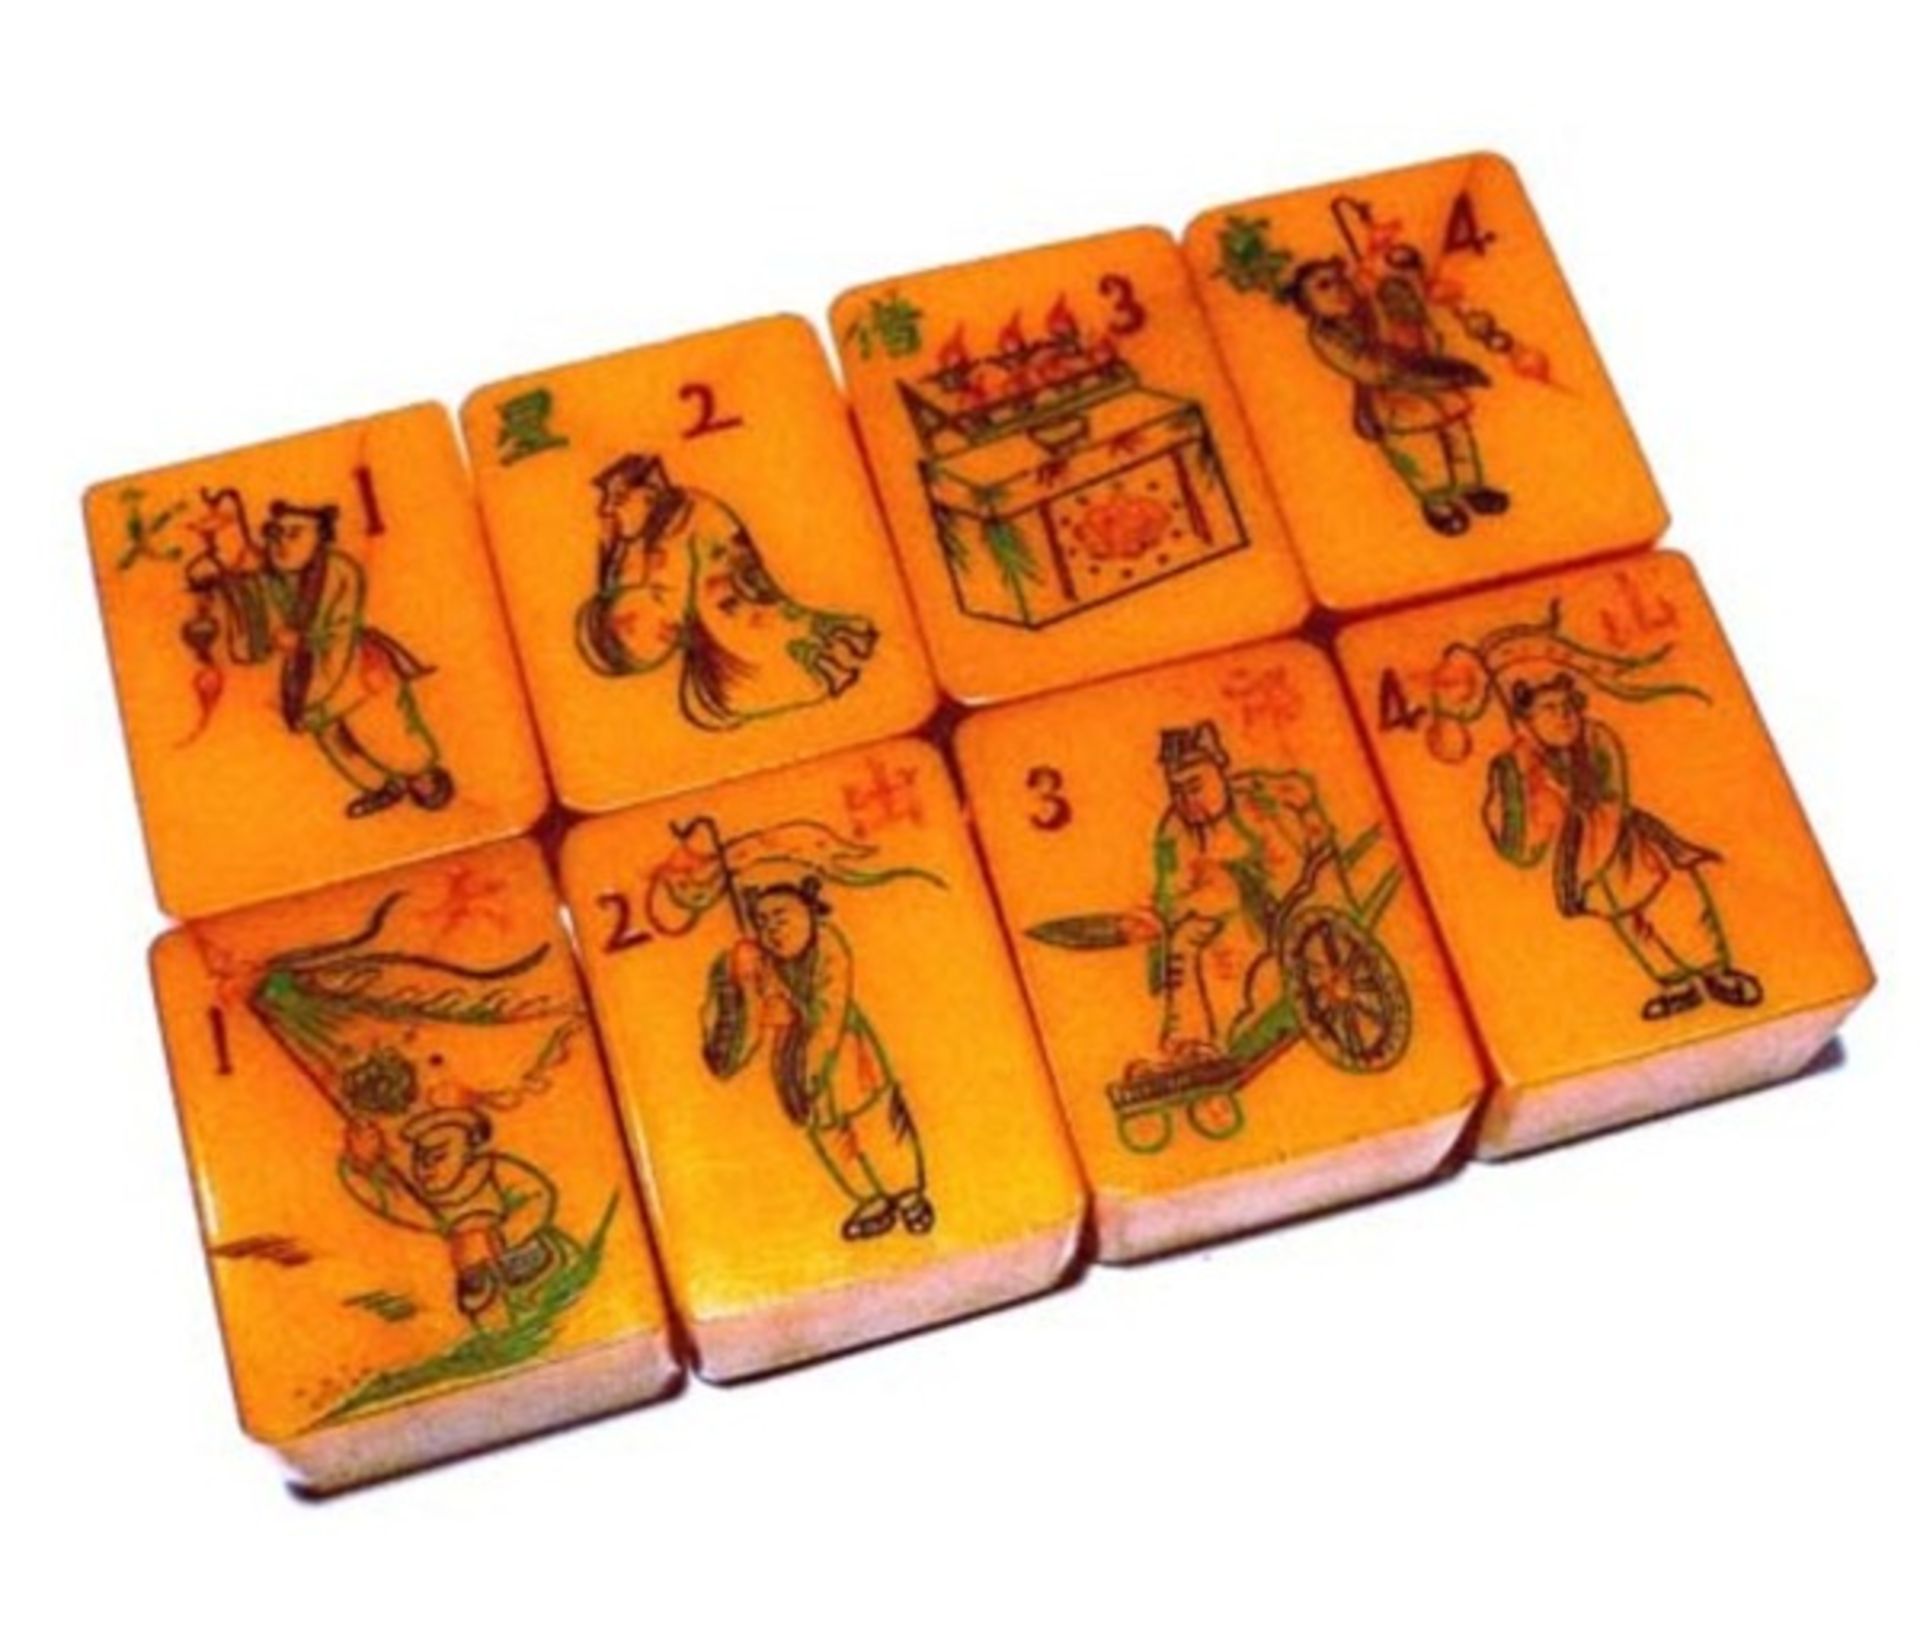 (Mahjong) Mahjong kunststof, traditionele 5-laden doos, ca. 1923 - Bild 4 aus 13